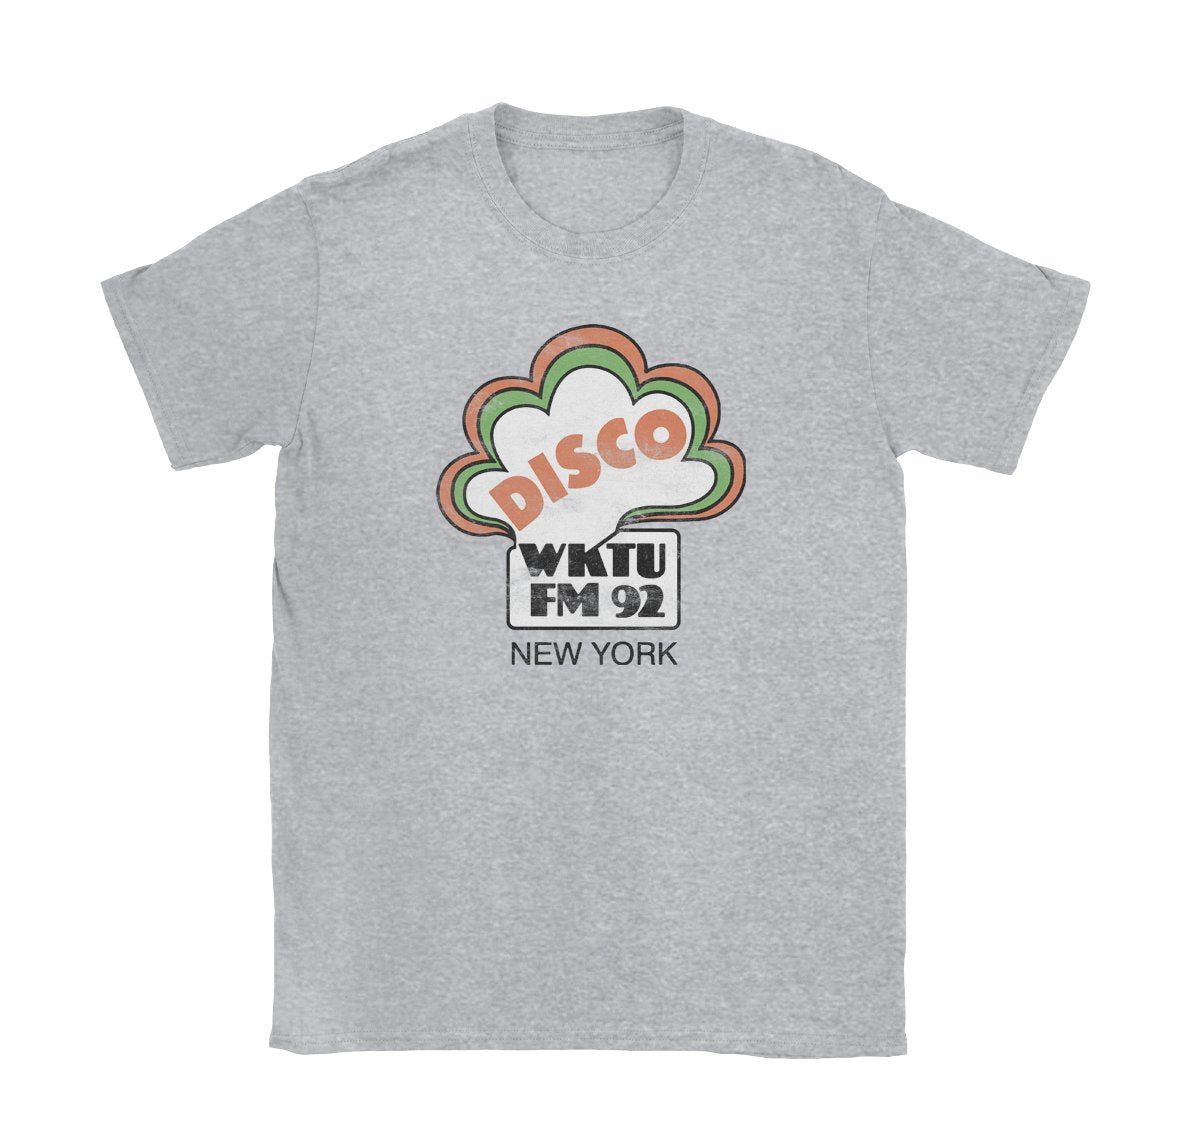 WKTU FM 92 - Black Cat MFG - T-Shirt